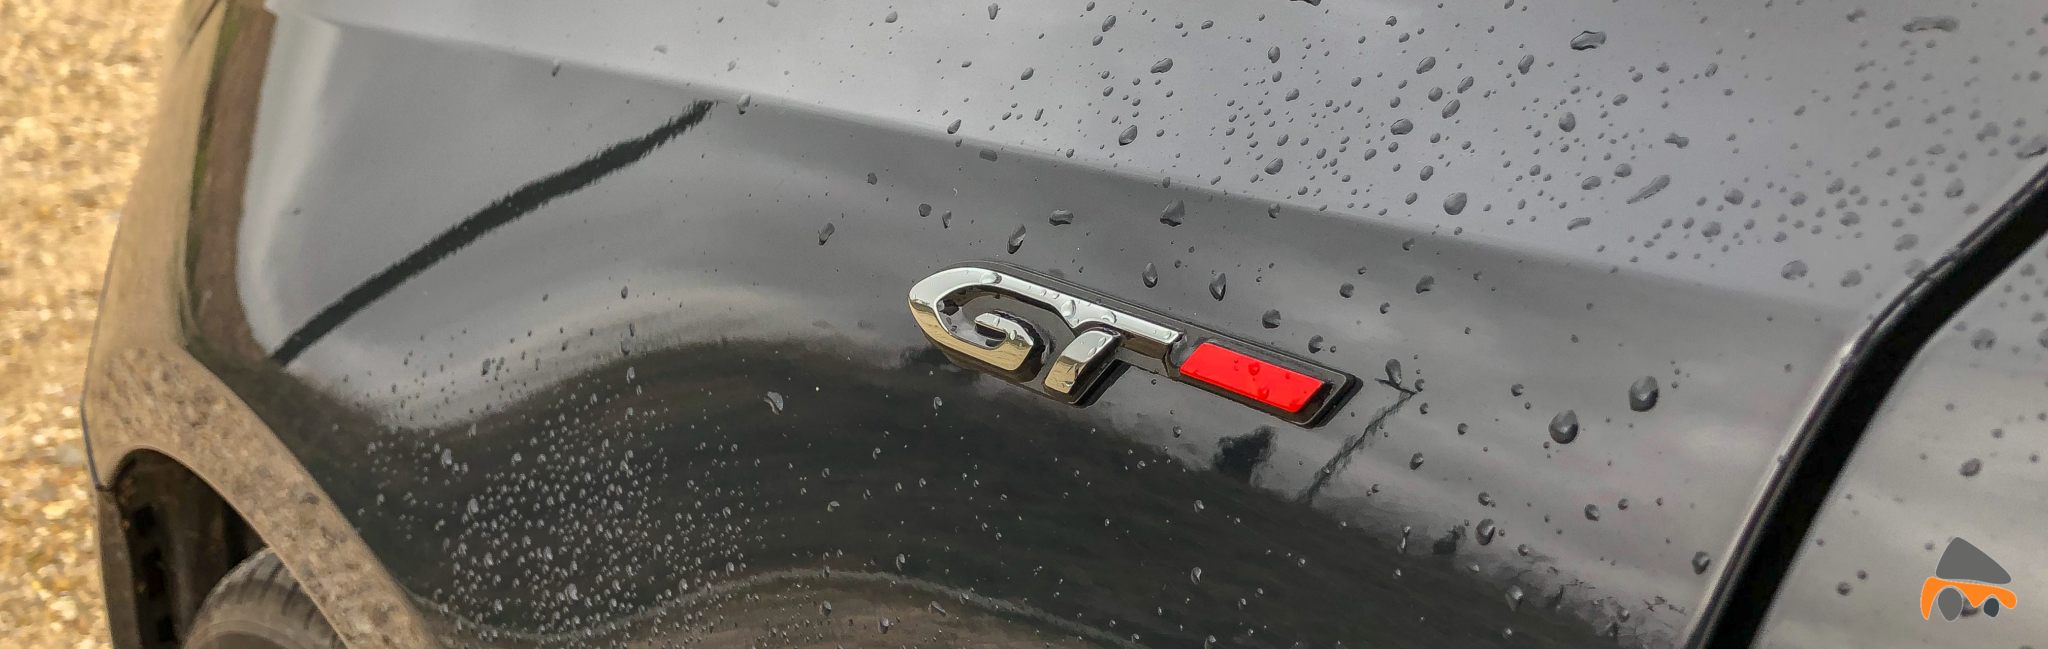 Logo GT Peugeot 308 GT - Peugeot 308 GT: El deportivo francés